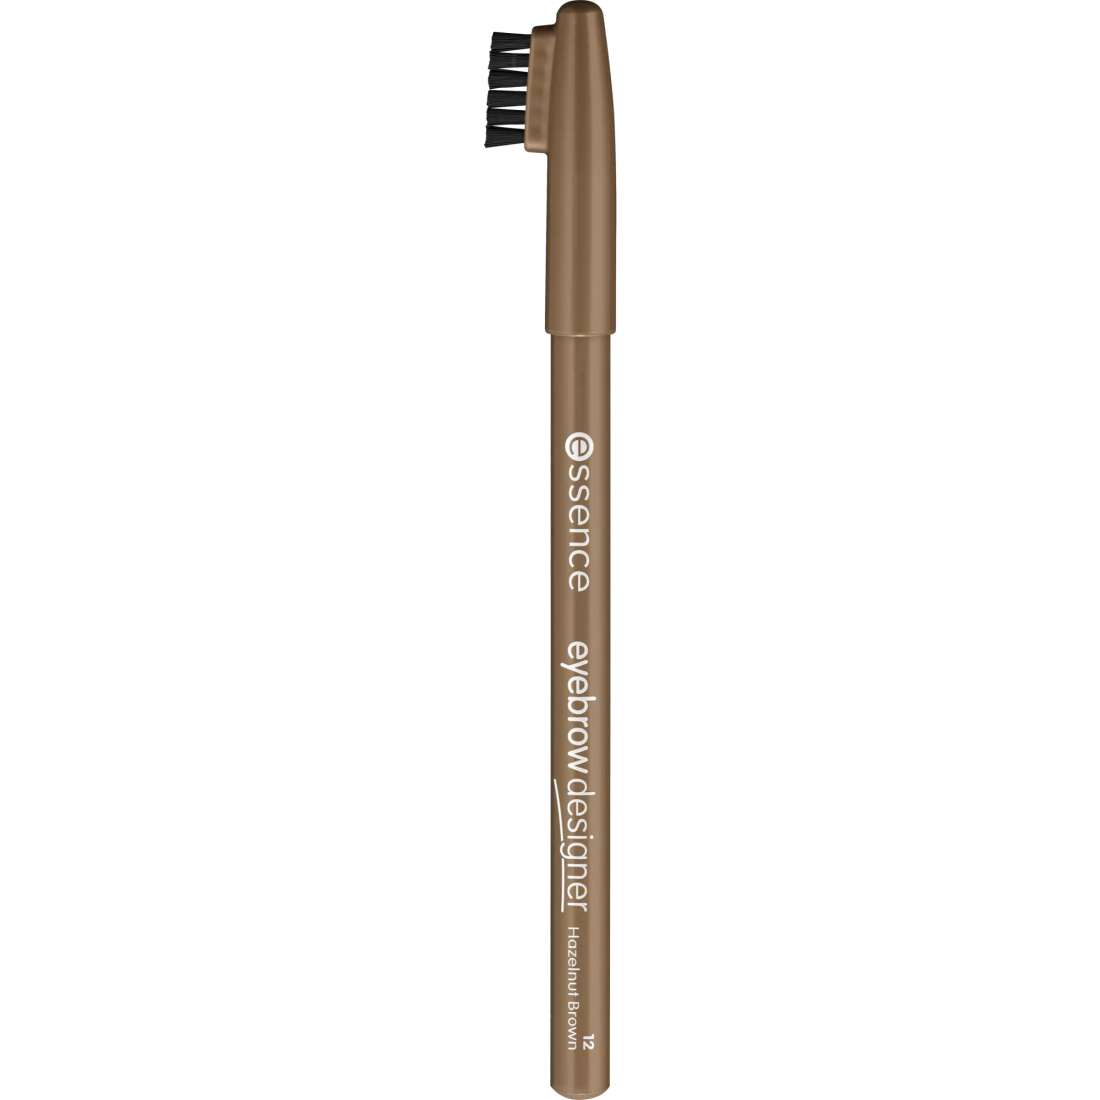 'Designer' Eyebrow Pencil - 12 Hazelnut Brown 1 g